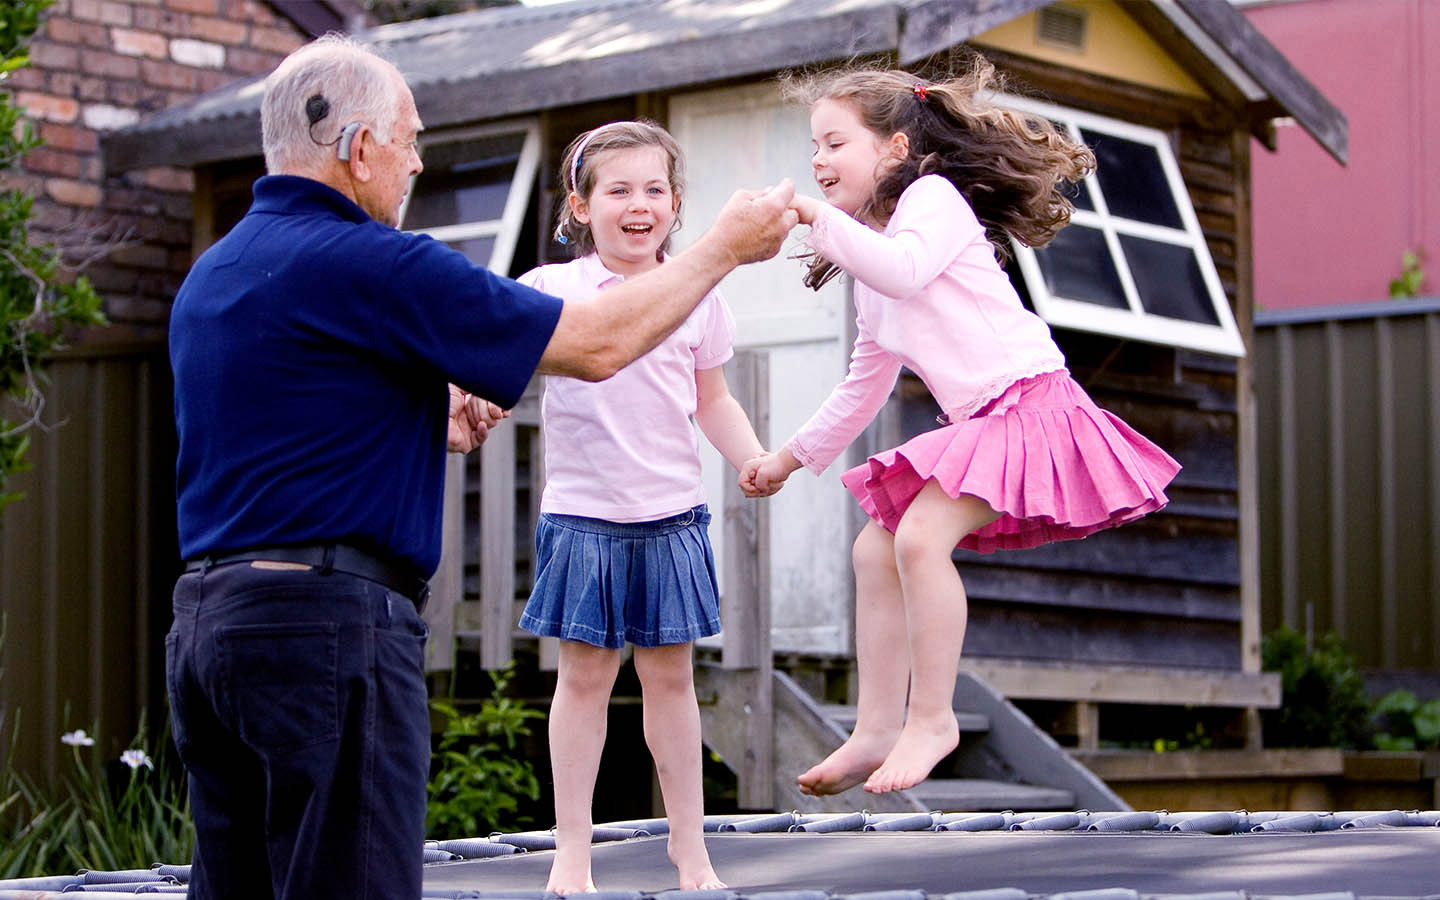 Un paciente con implante coclear sostiene las manos de sus dos nietas mientras saltan en una cama elástica